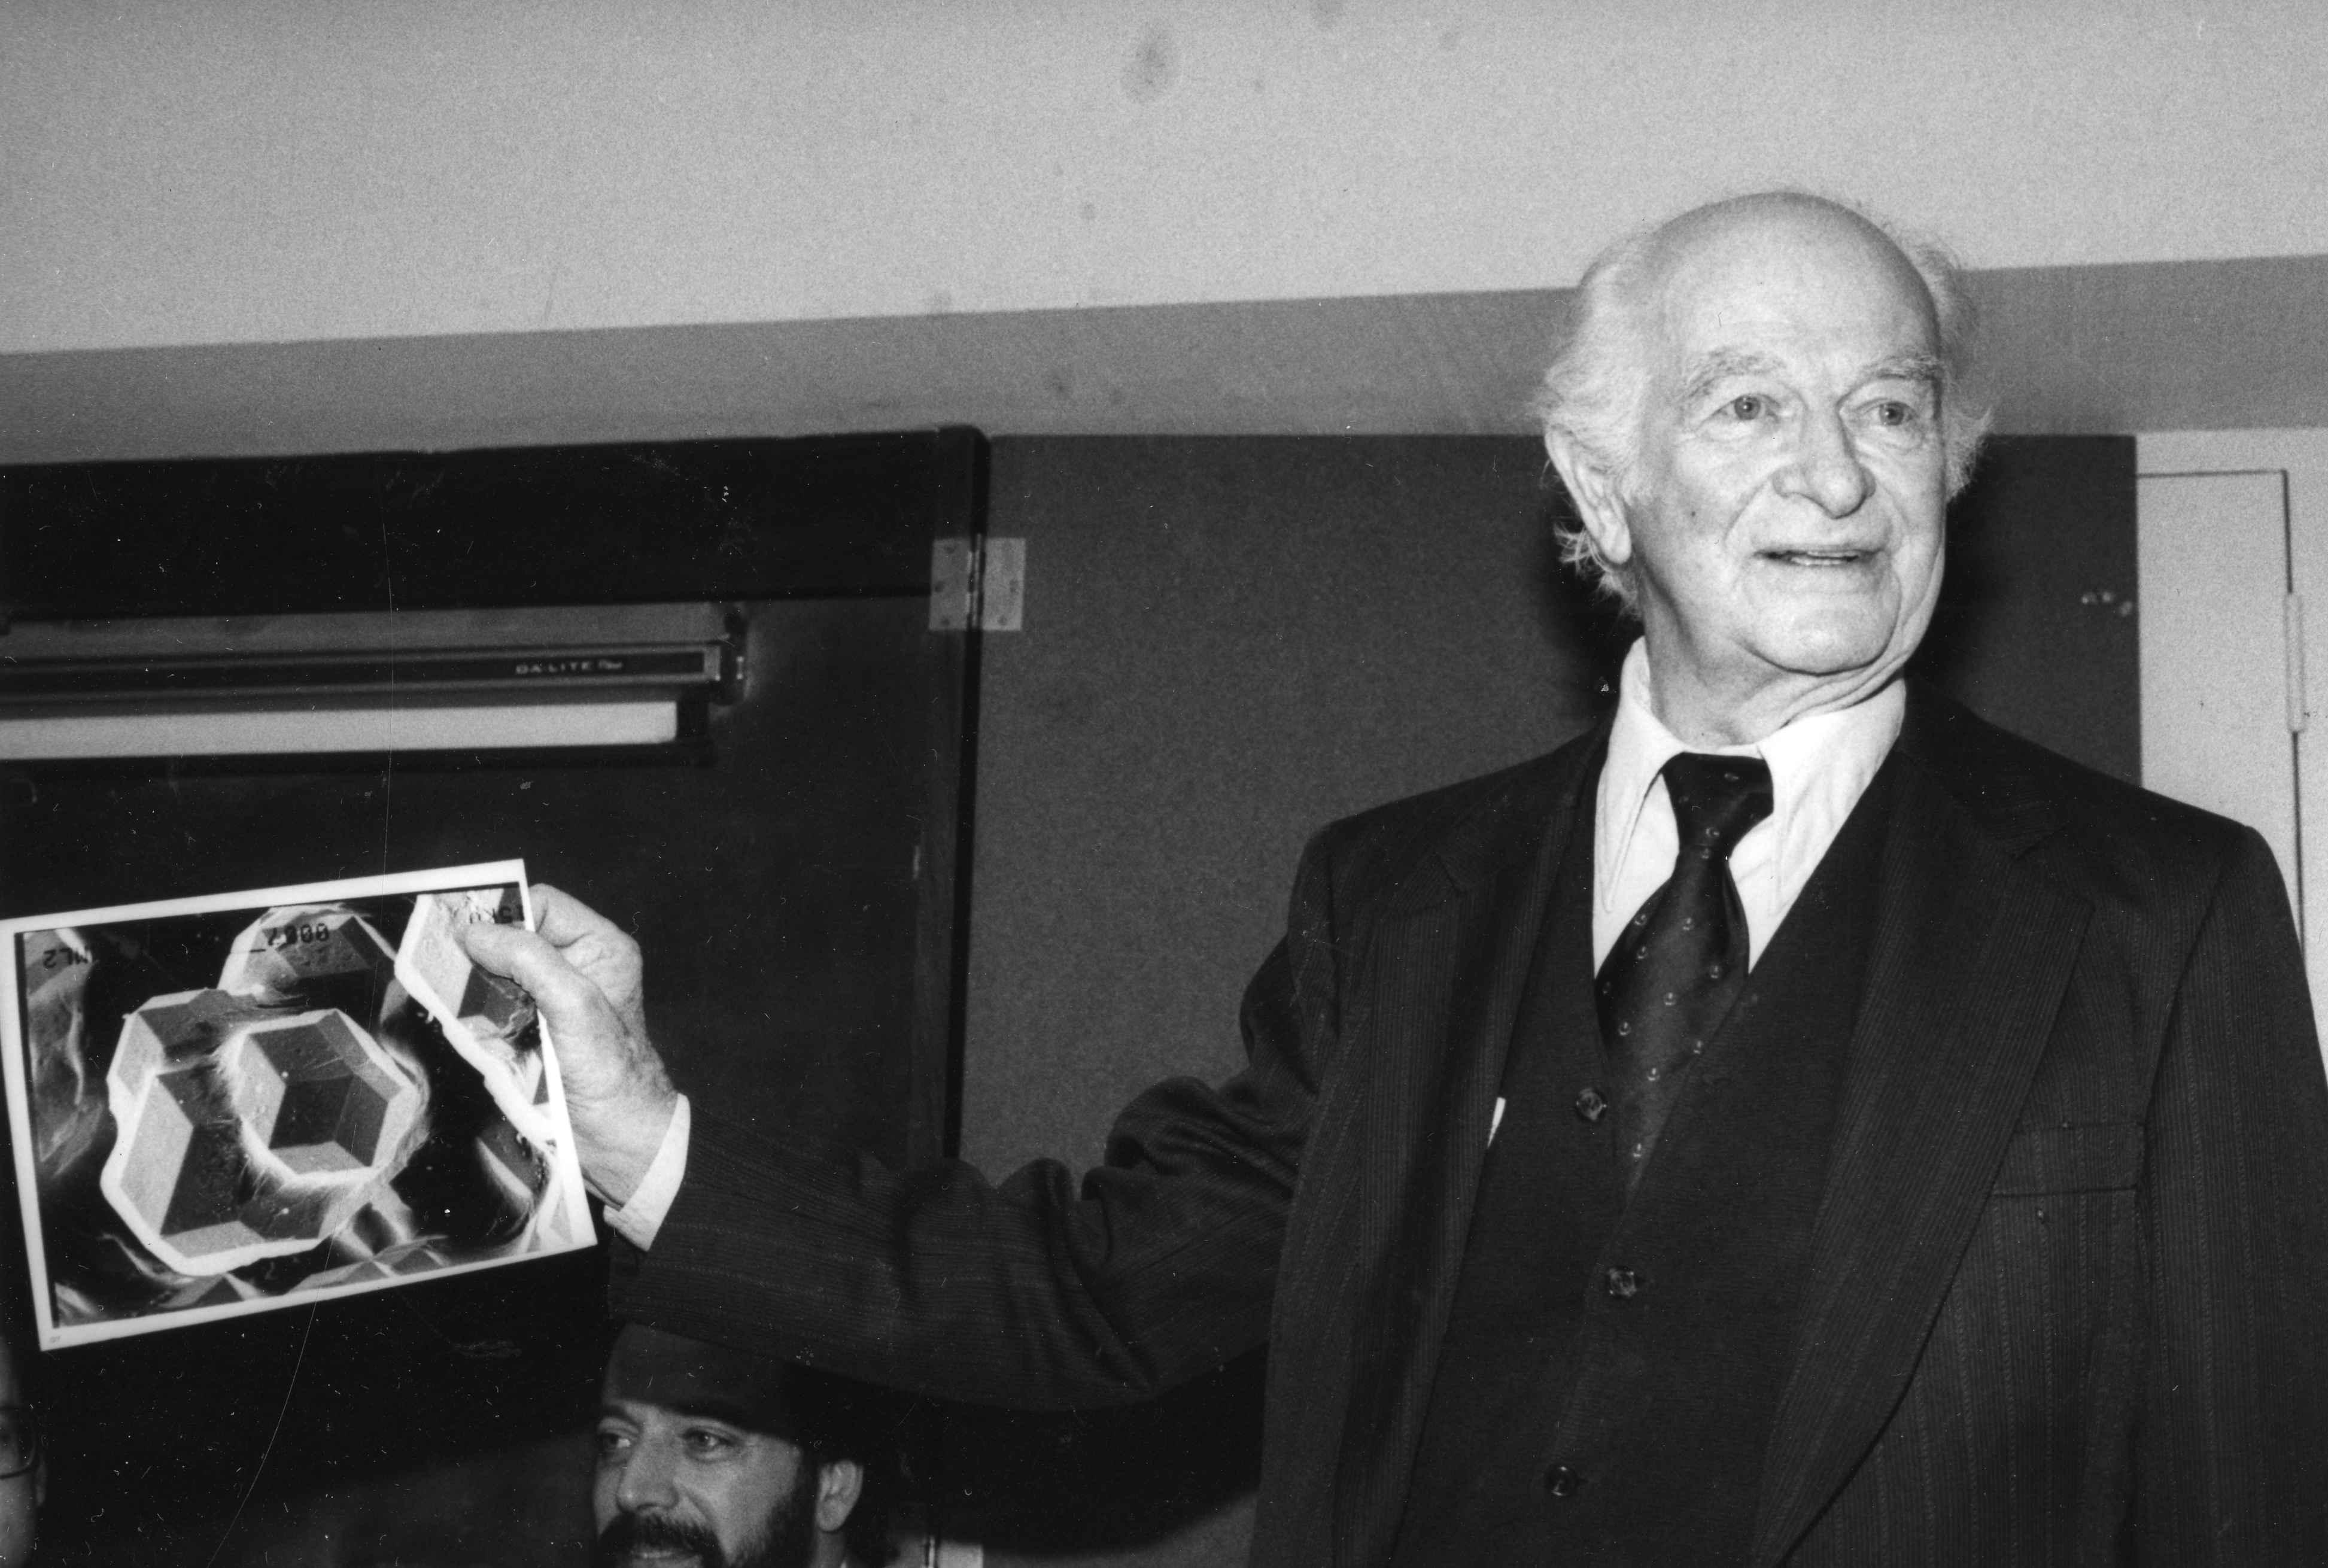 pauling durante una conferenza nell'87, AIP Emilio Segrè Visual Archives